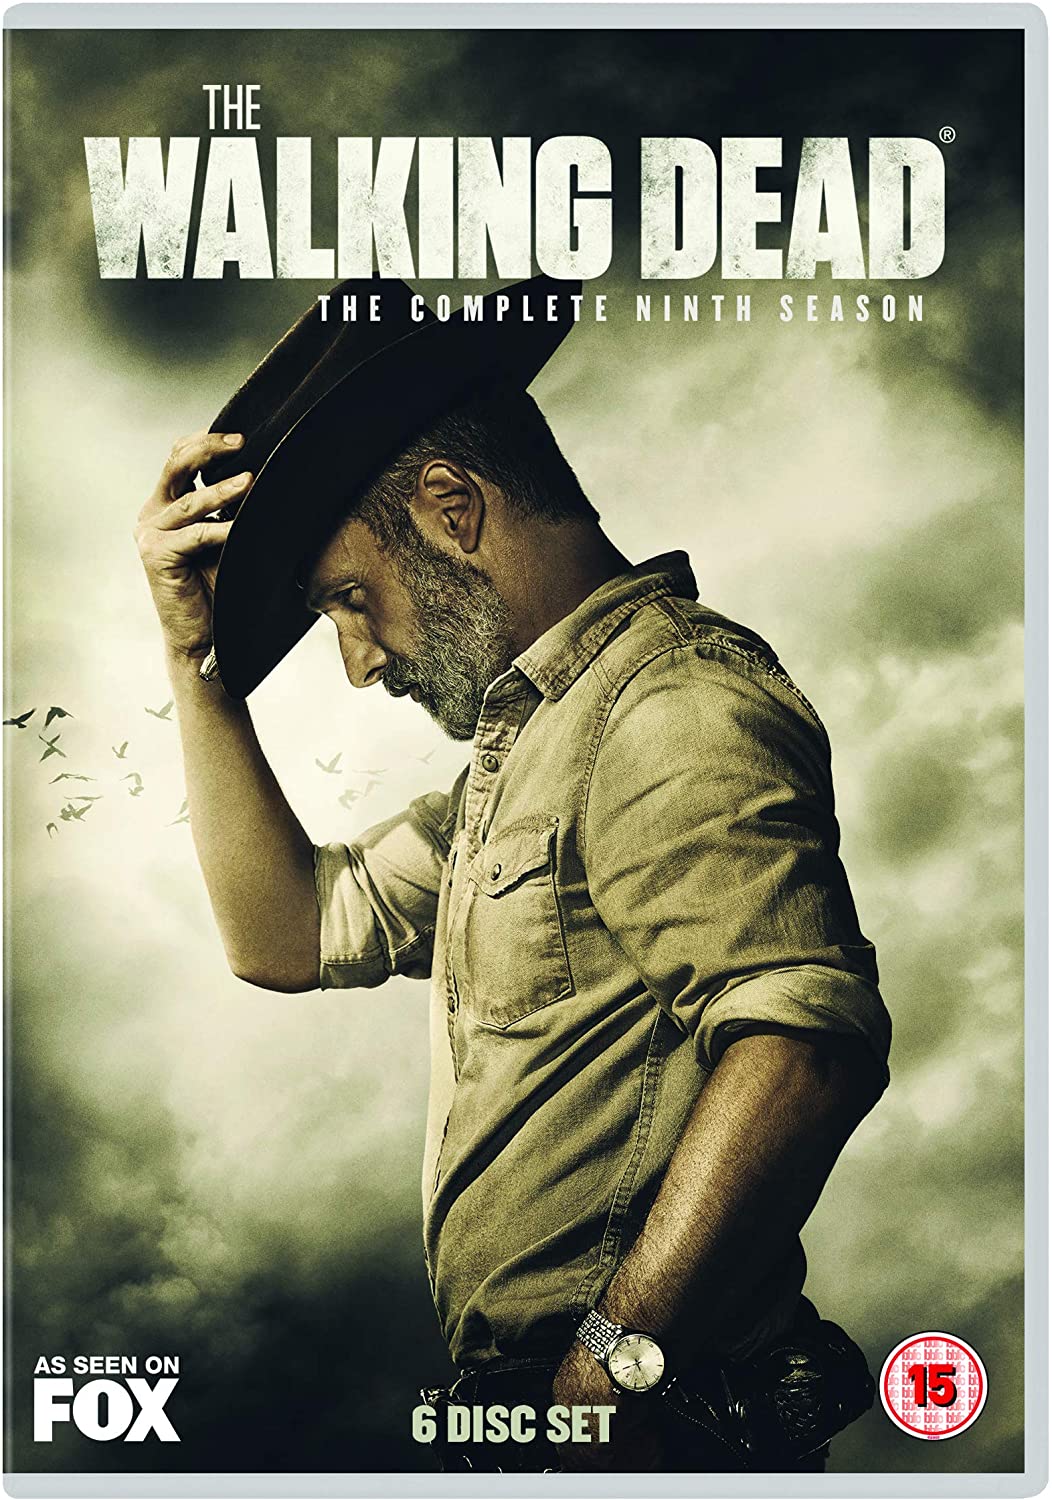 The Walking Dead Season 9 [DVD]